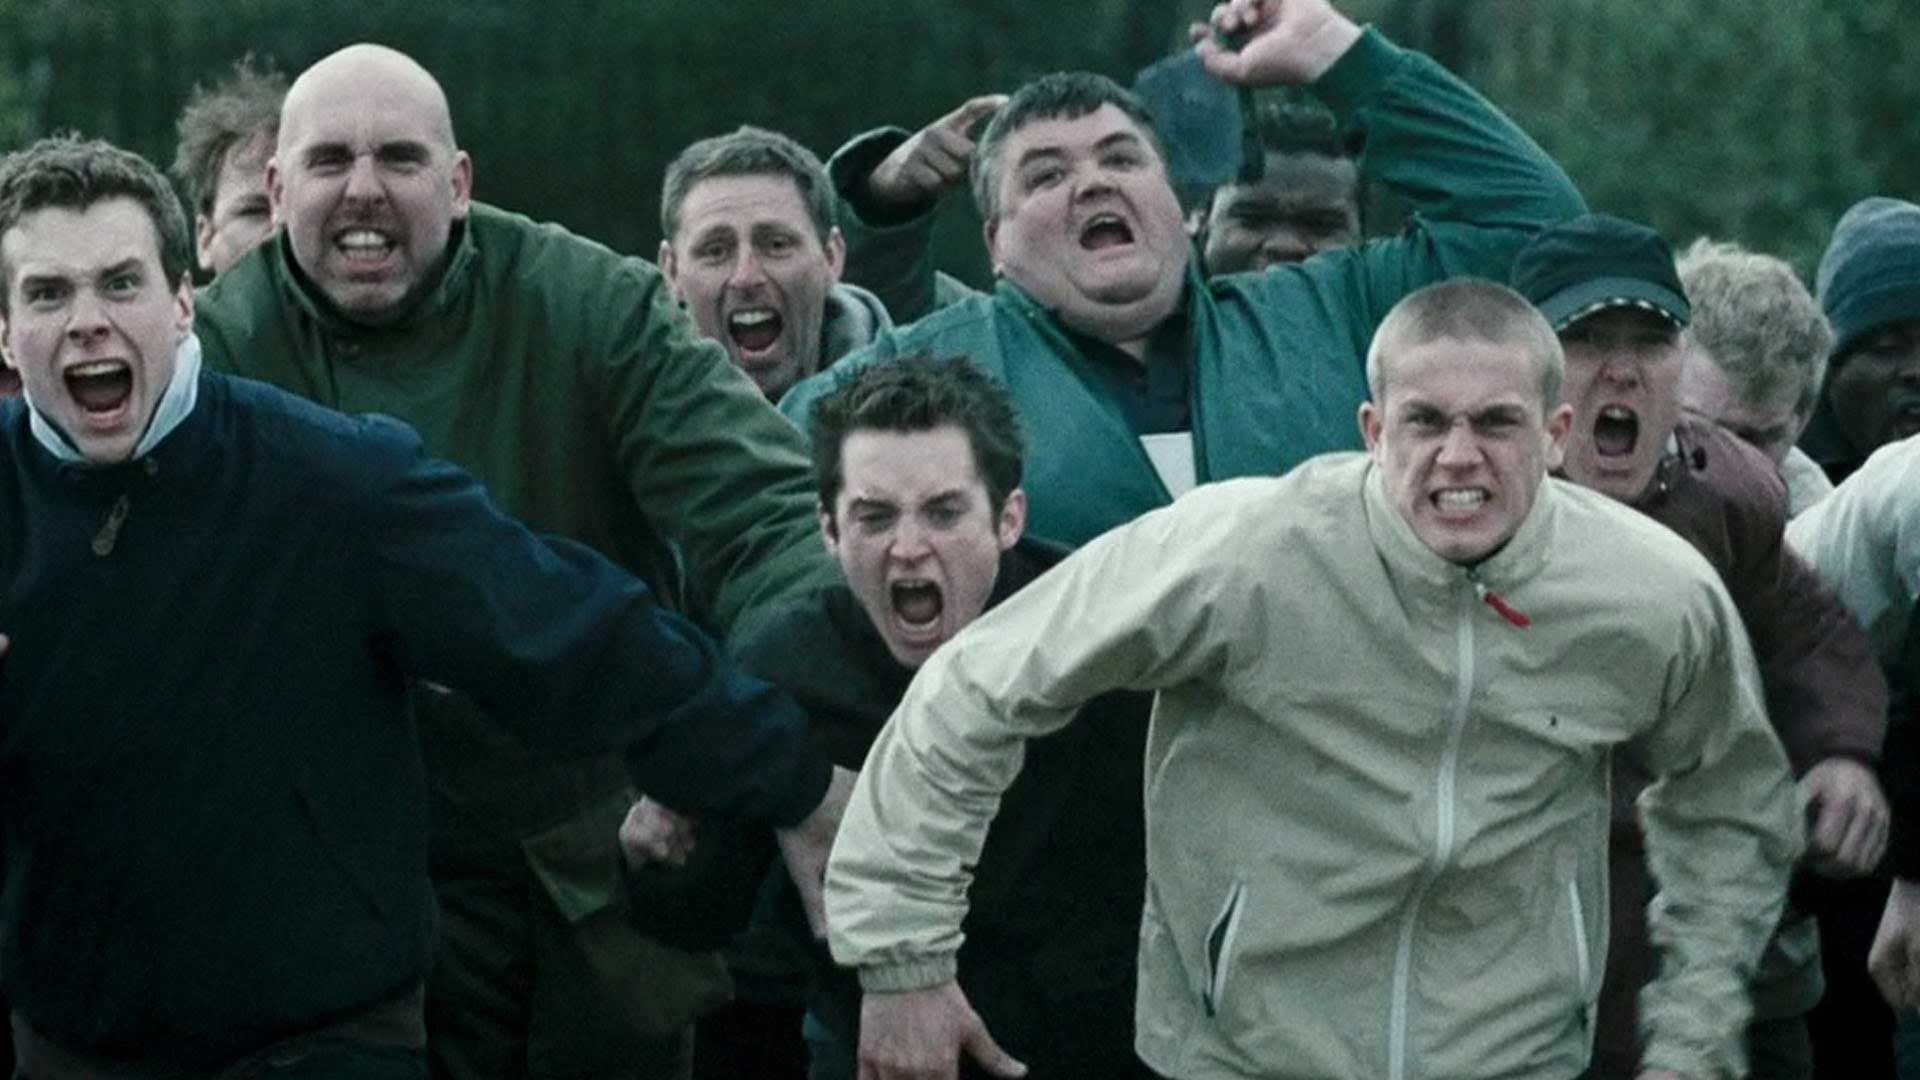 فیلم Green Street Hooligans با بازی الایجا وود و چارلی هونام، محصول سال ۲۰۰۵ میلادی